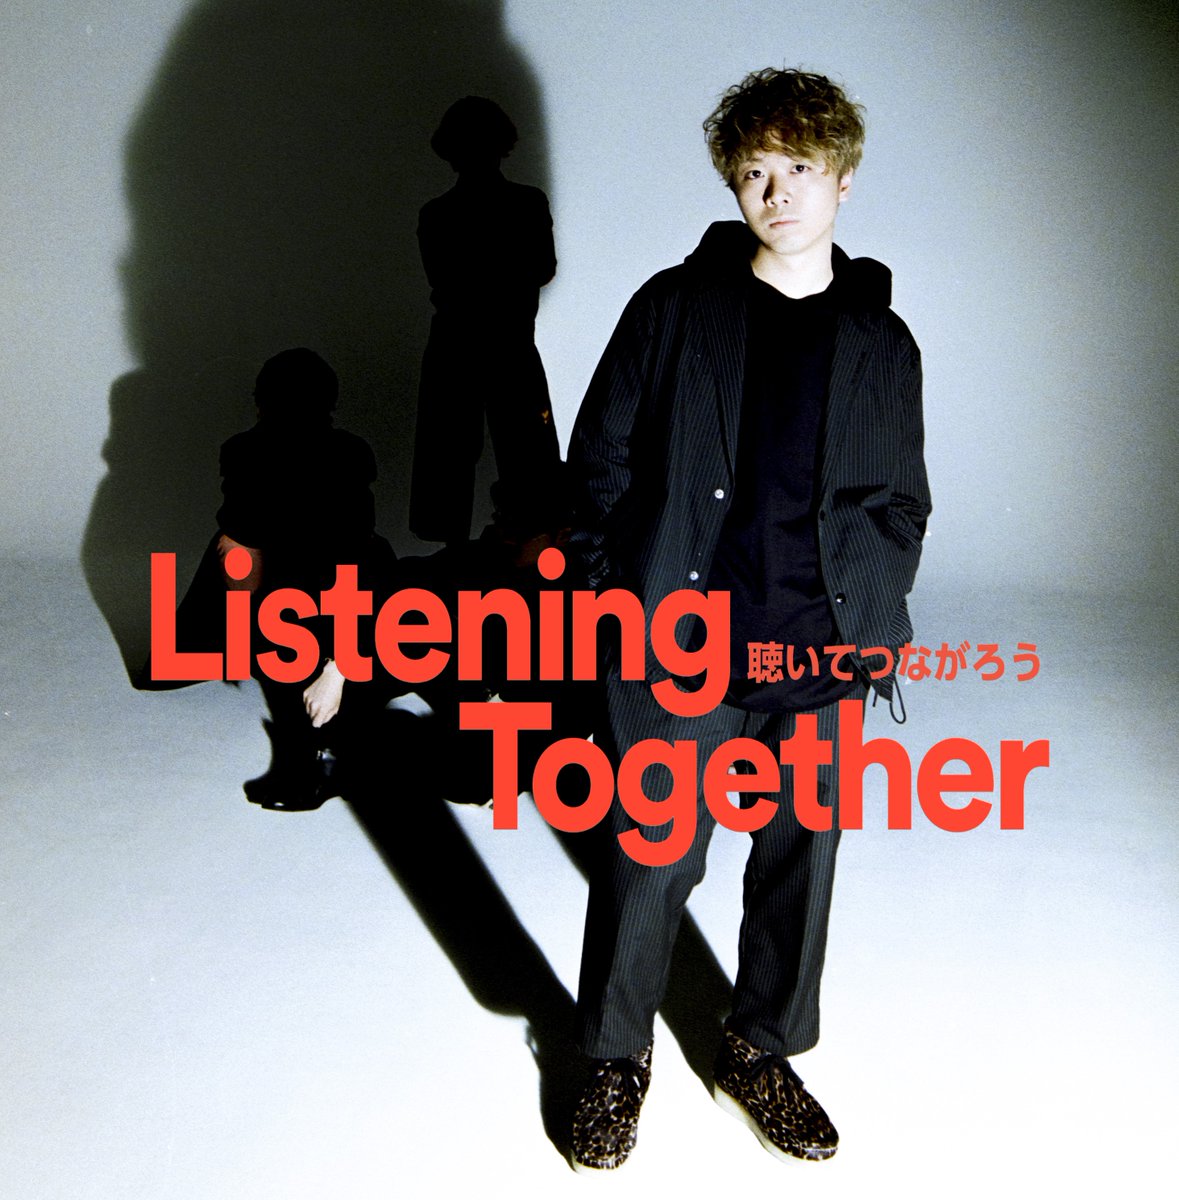 Spotifyにて「Listening Together #聴いてつながろう」オカモトコウキ是非、聴いてみて下さい！
open.spotify.com/playlist/3cwbJ…
 #聴いてつながろう #ListeningTogether #OKAMOTOS